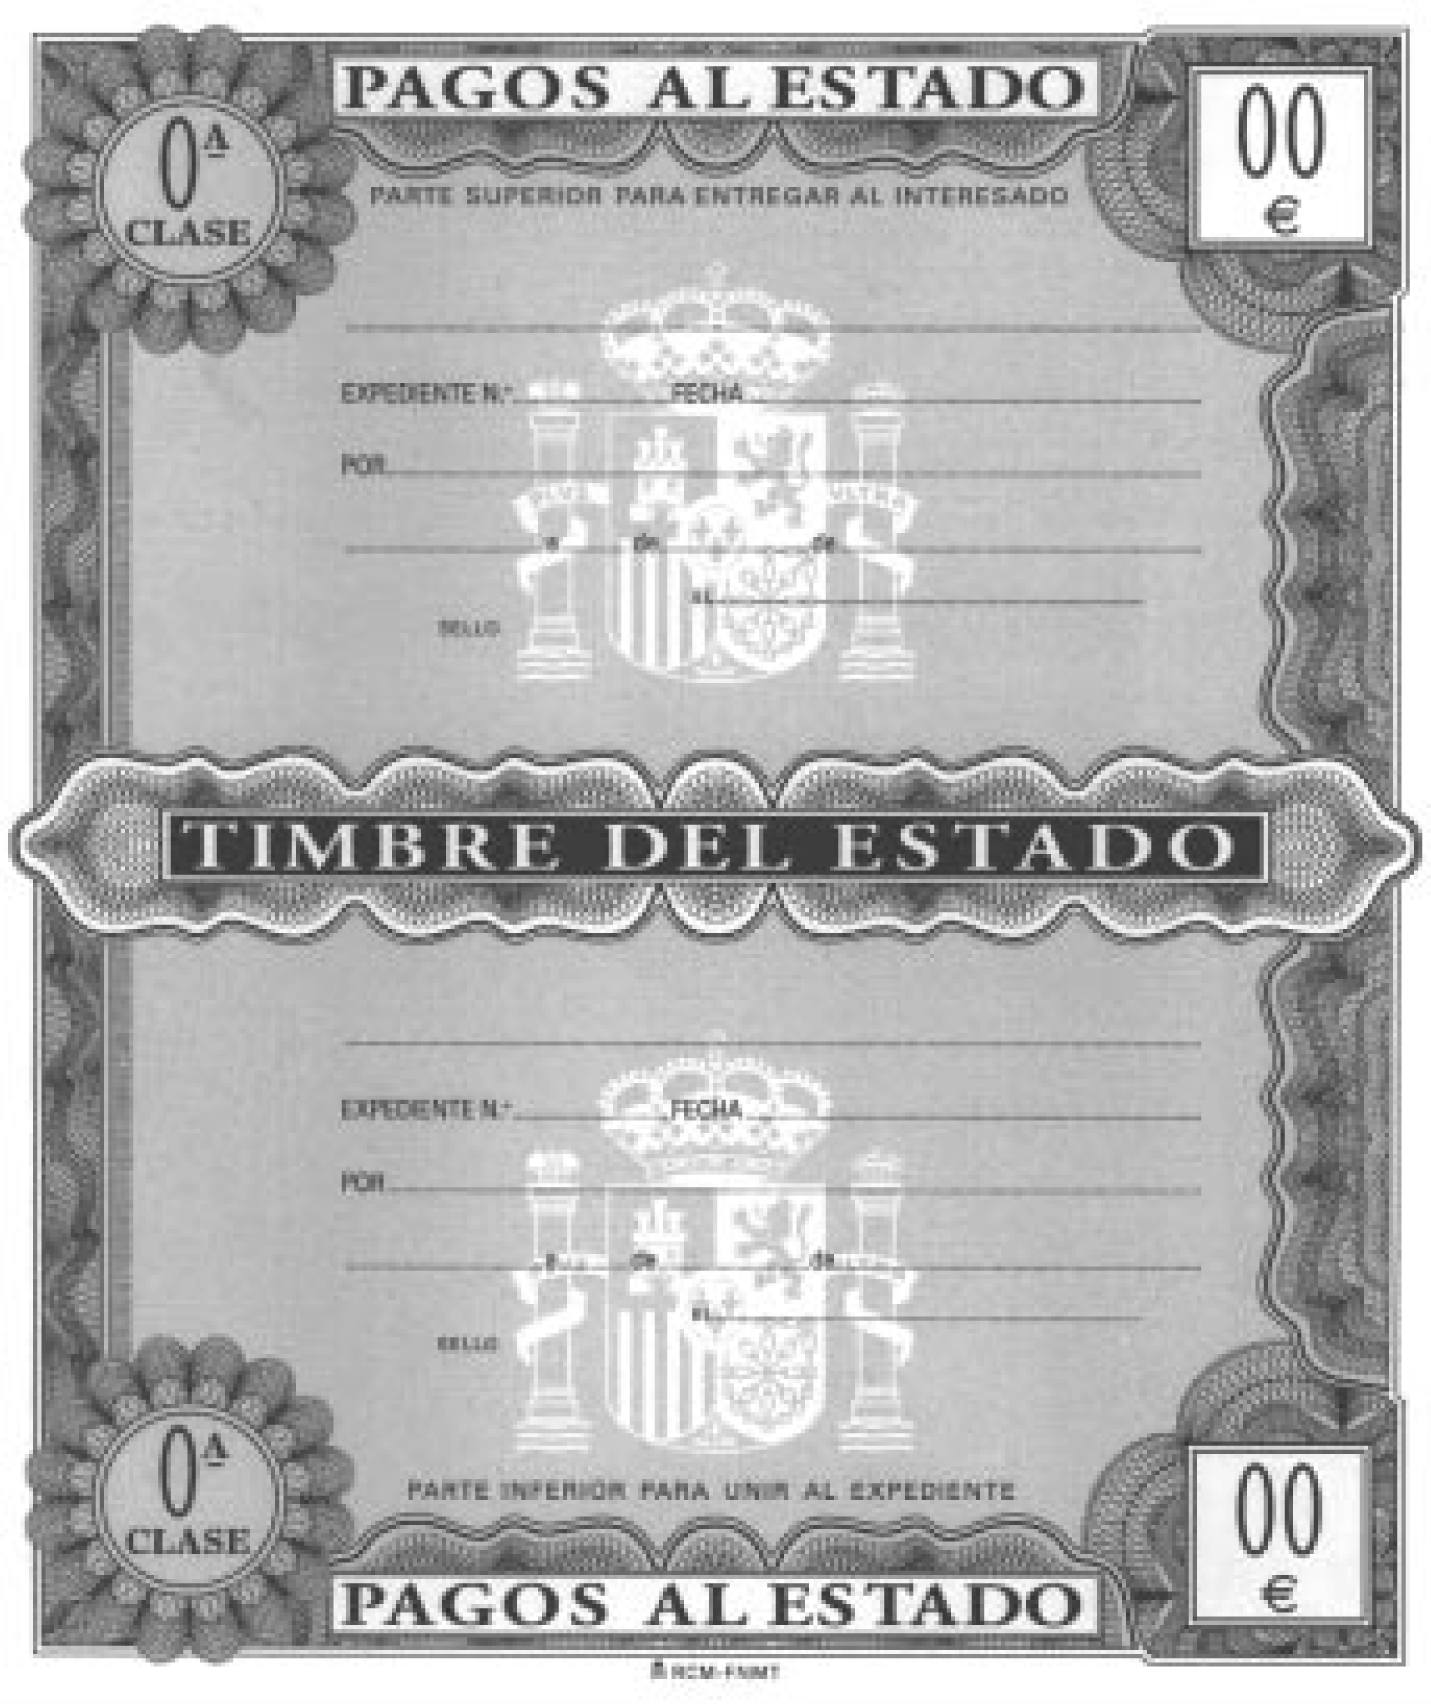 BOE-A-2001-19668 Orden de 11 de octubre de 2001 por la que se aprueban los  modelos de Timbres del Estado con sus valores en euros.